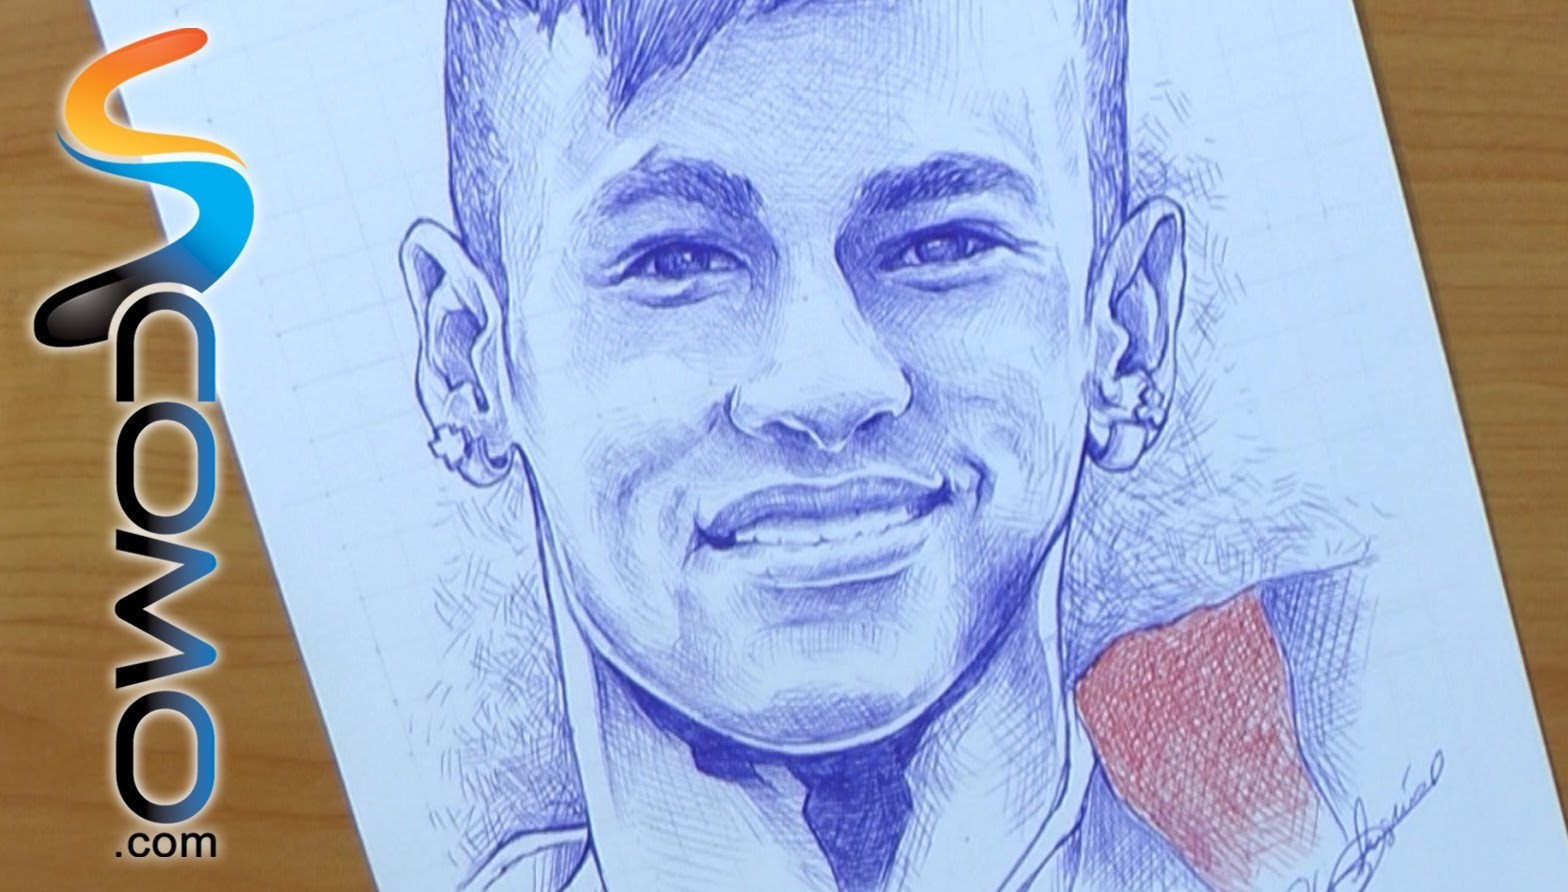 Dibujar a Neymar - Draw Neymar